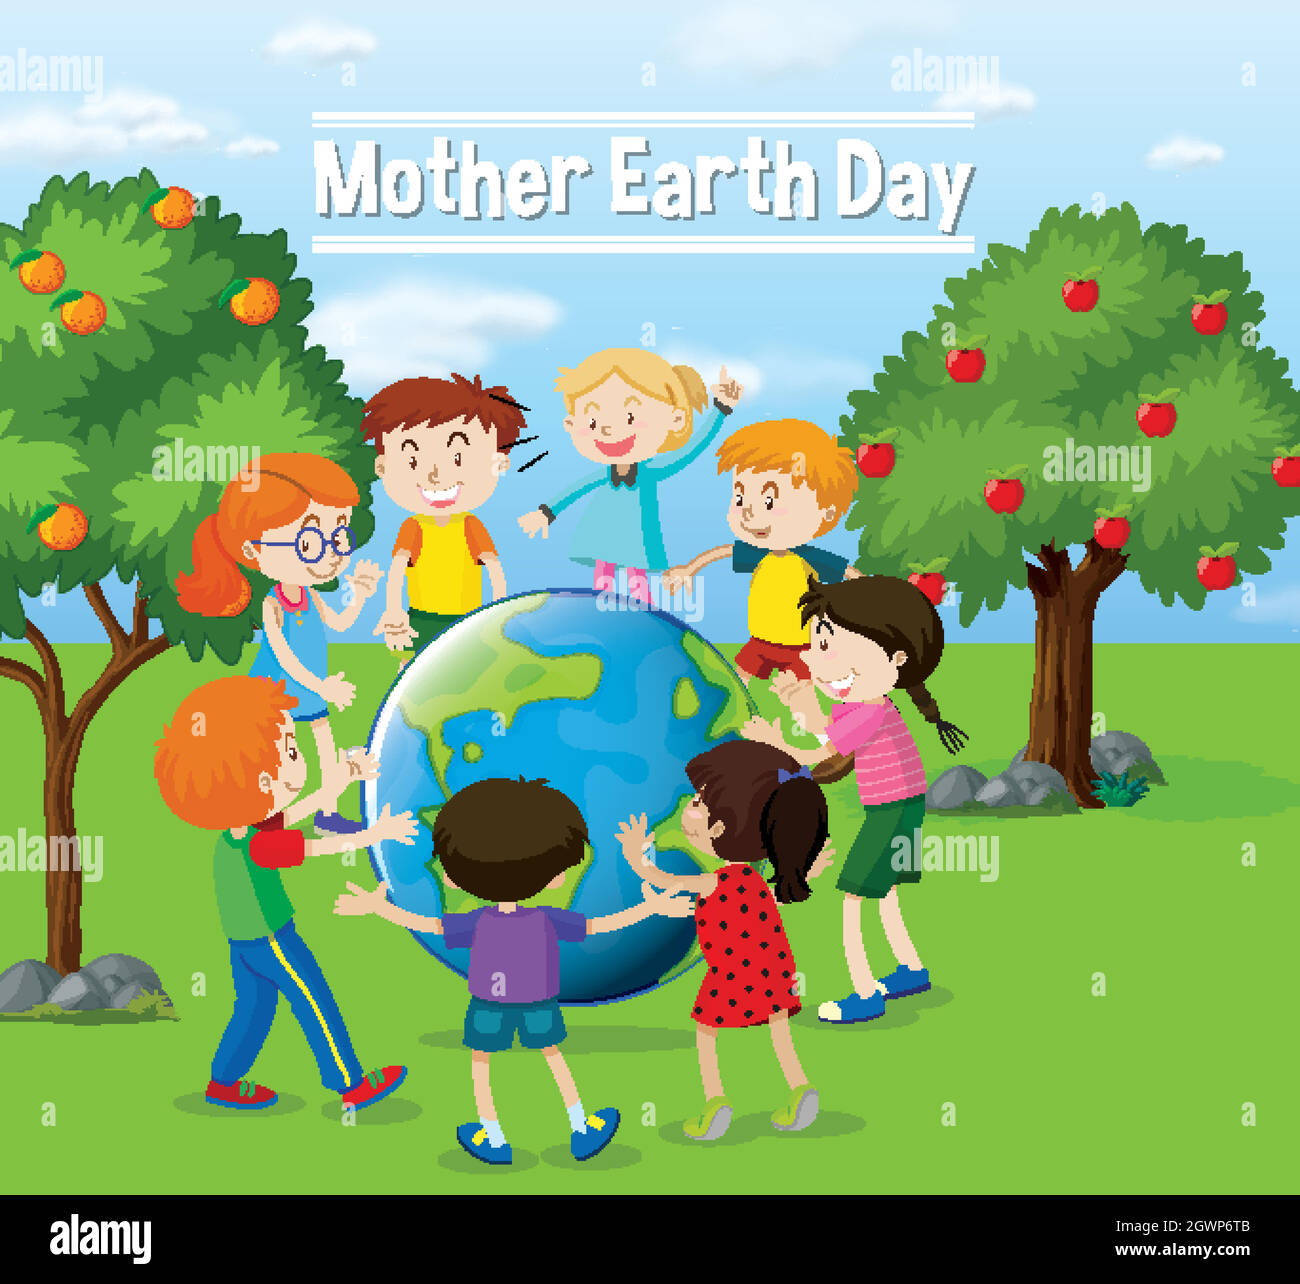 Diseño de póster para el día de la madre tierra con niños felices jugando Ilustración del Vector